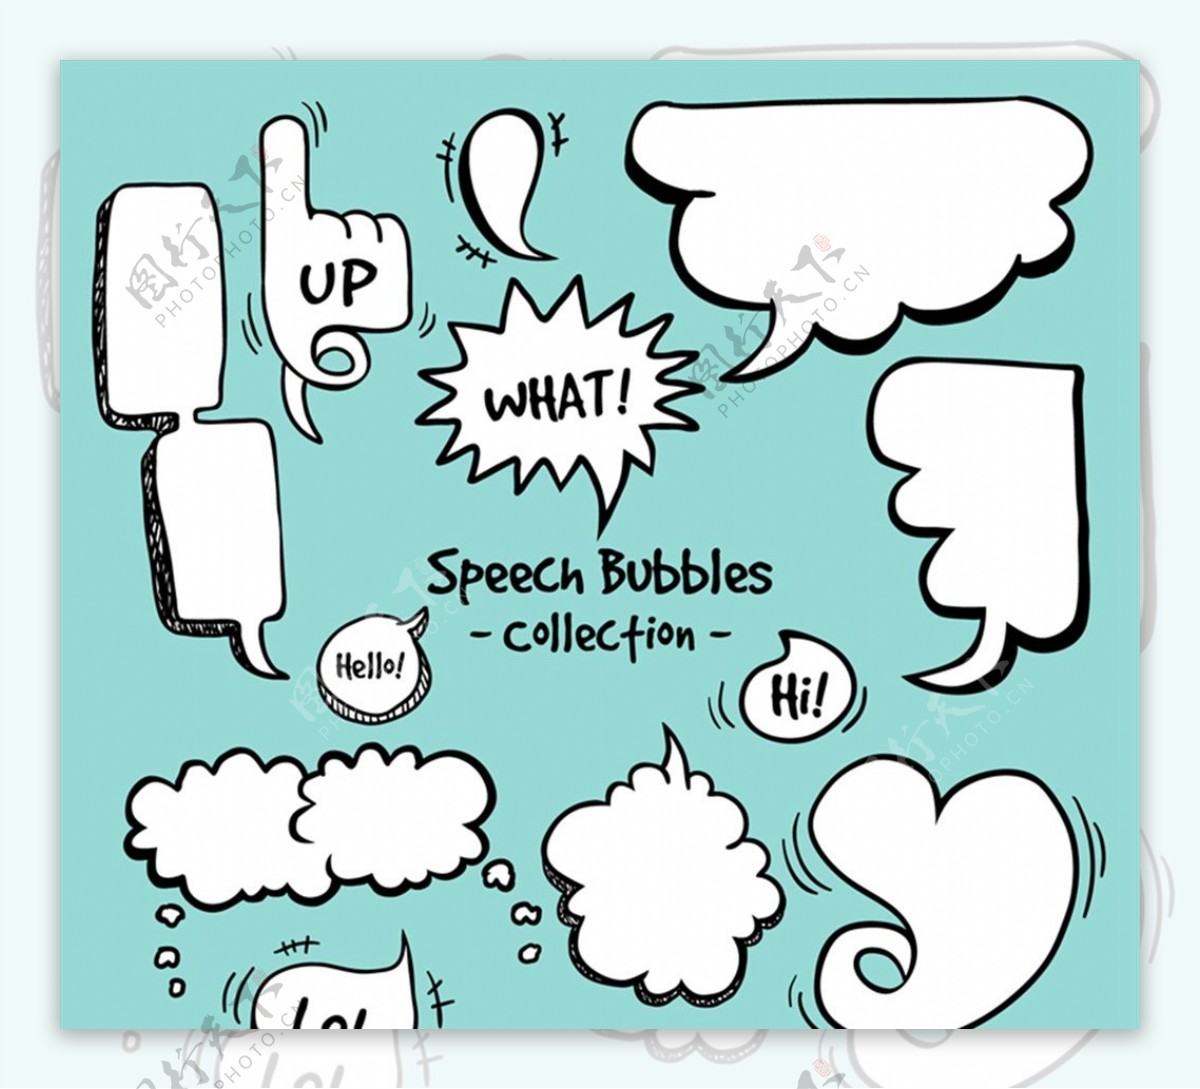 漫画风格语言气泡图片